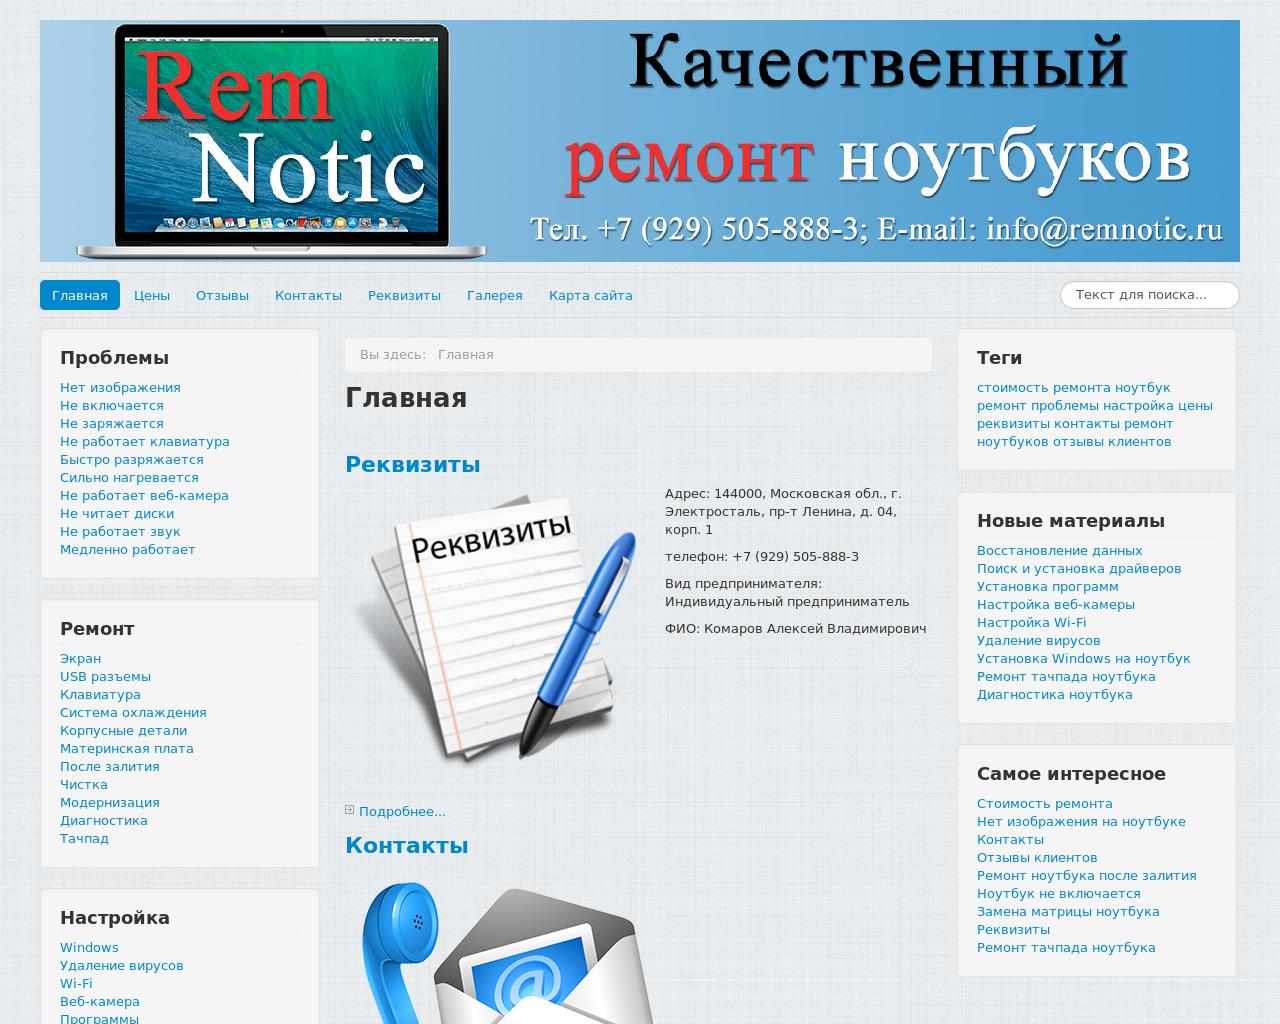 Изображение сайта remnotic.ru в разрешении 1280x1024